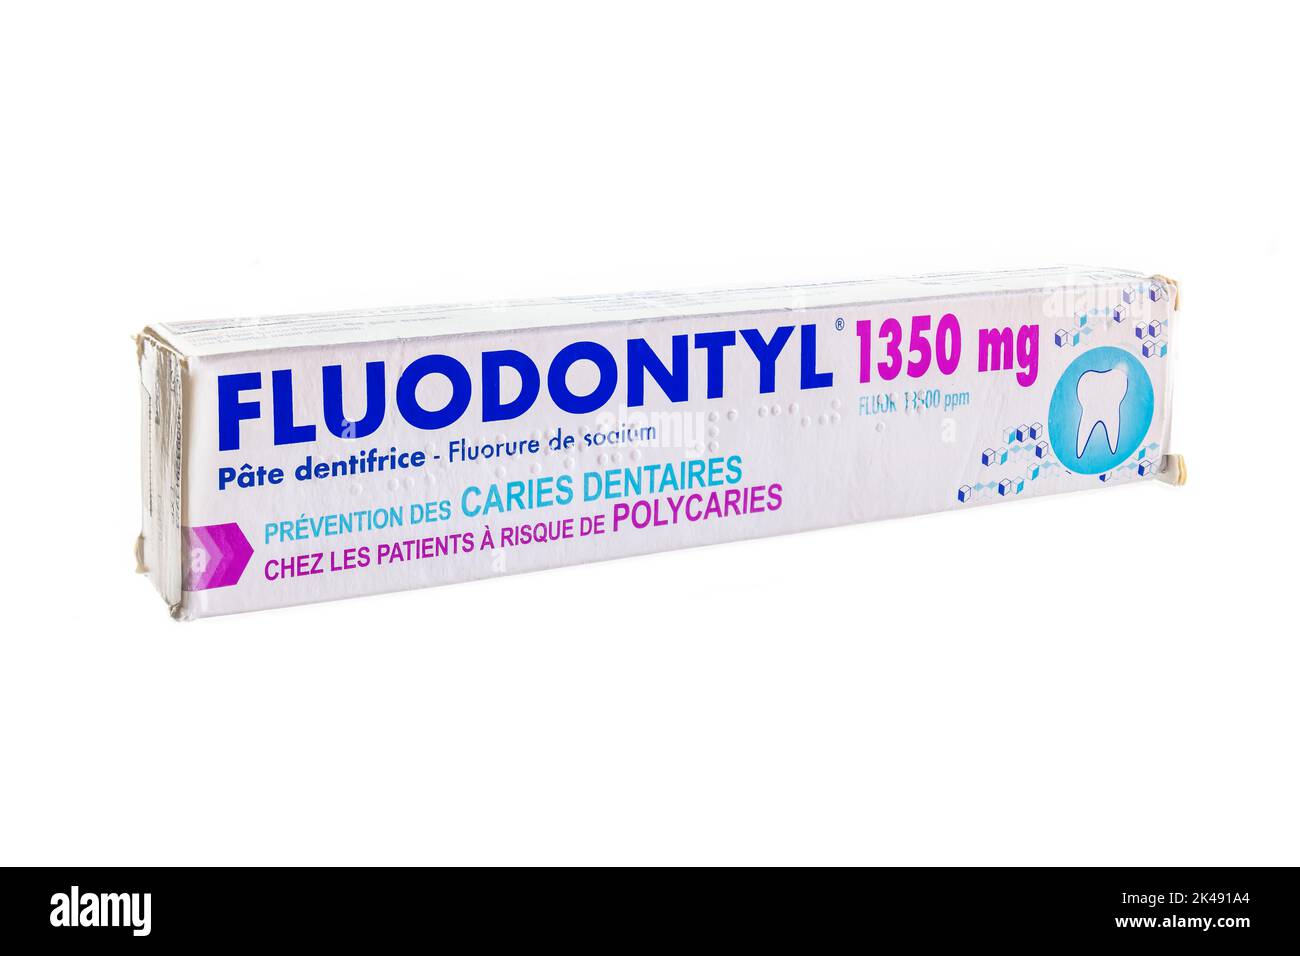 Huelva, Espagne - 30 septembre 2022: Fluodontyl 1350mg, dentifrice au fluorure très élevé, pour la prévention des caries dentaires, en particulier chez les patients à risque Banque D'Images